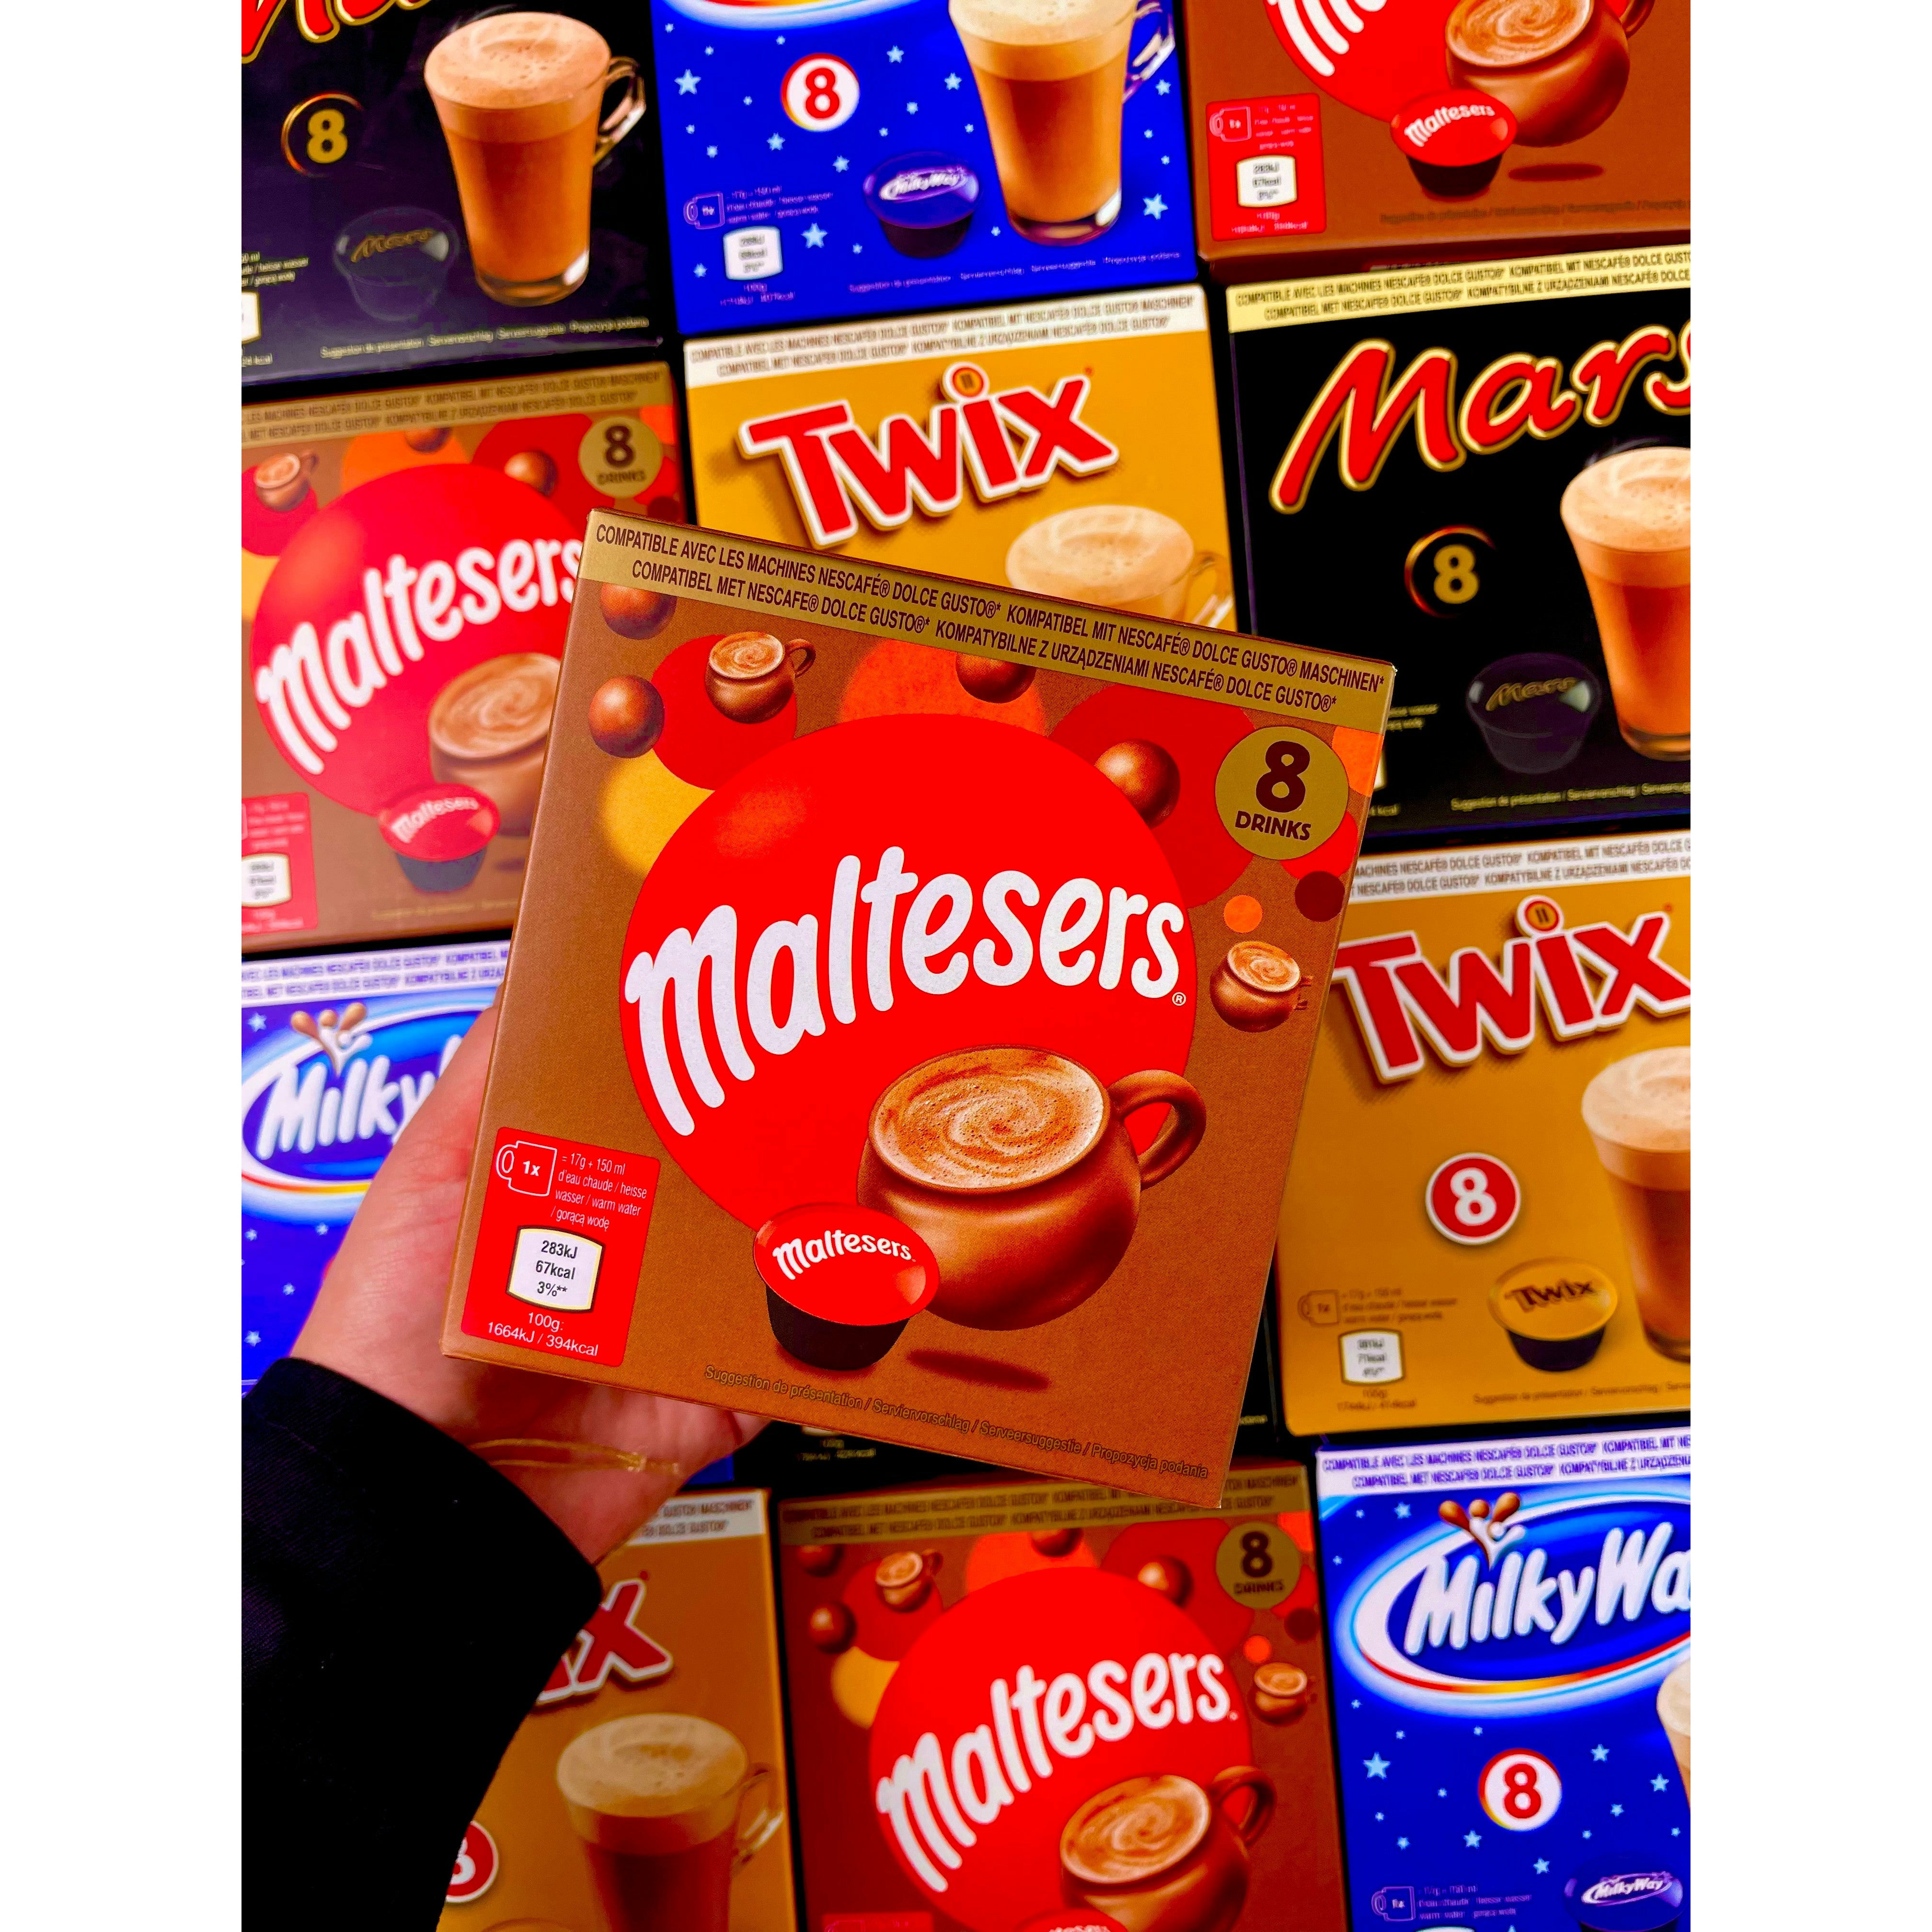 Une main tient un carton de Pods Dolce Gusto Maltesers et derrière il y a plein de cartons Twix, Maltesers, Mars et Milky Way